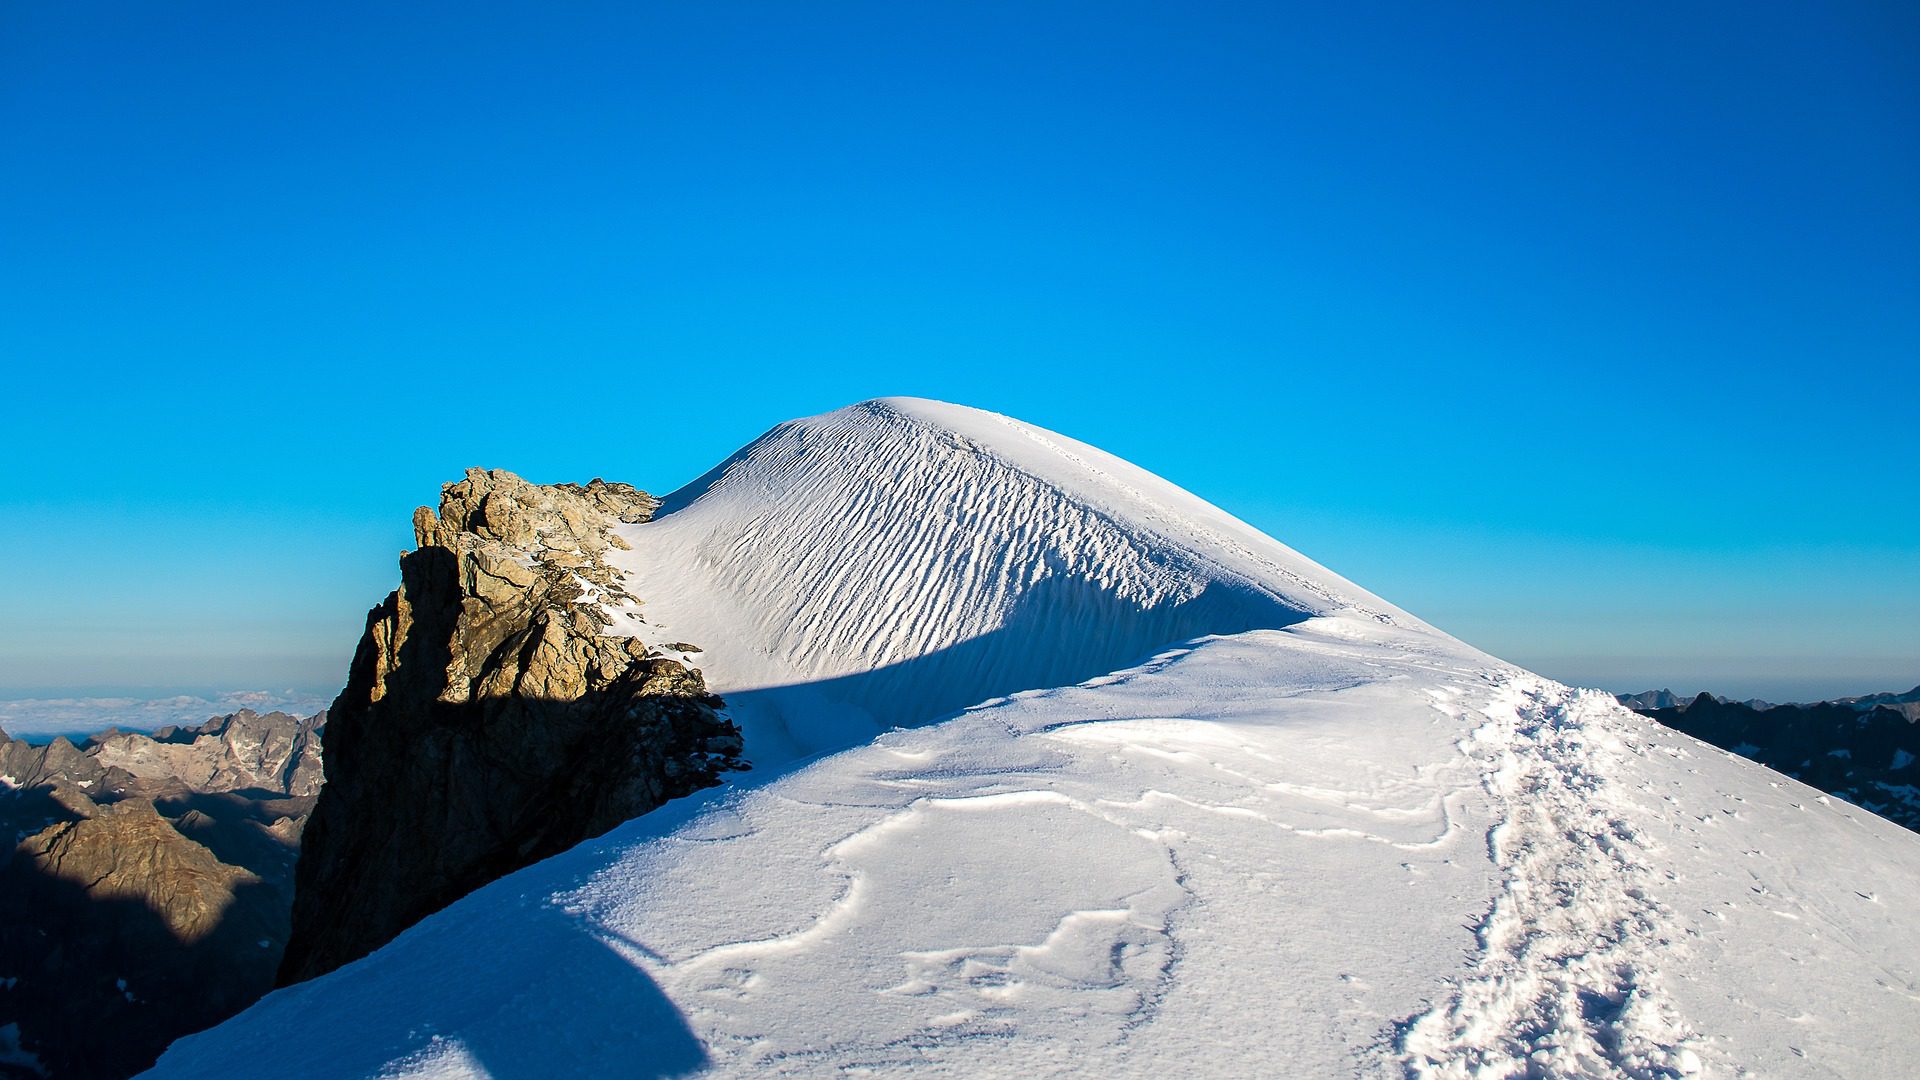 Le dôme de neige du Parc national des Écrins, une photographie d’Alex de Pixabay